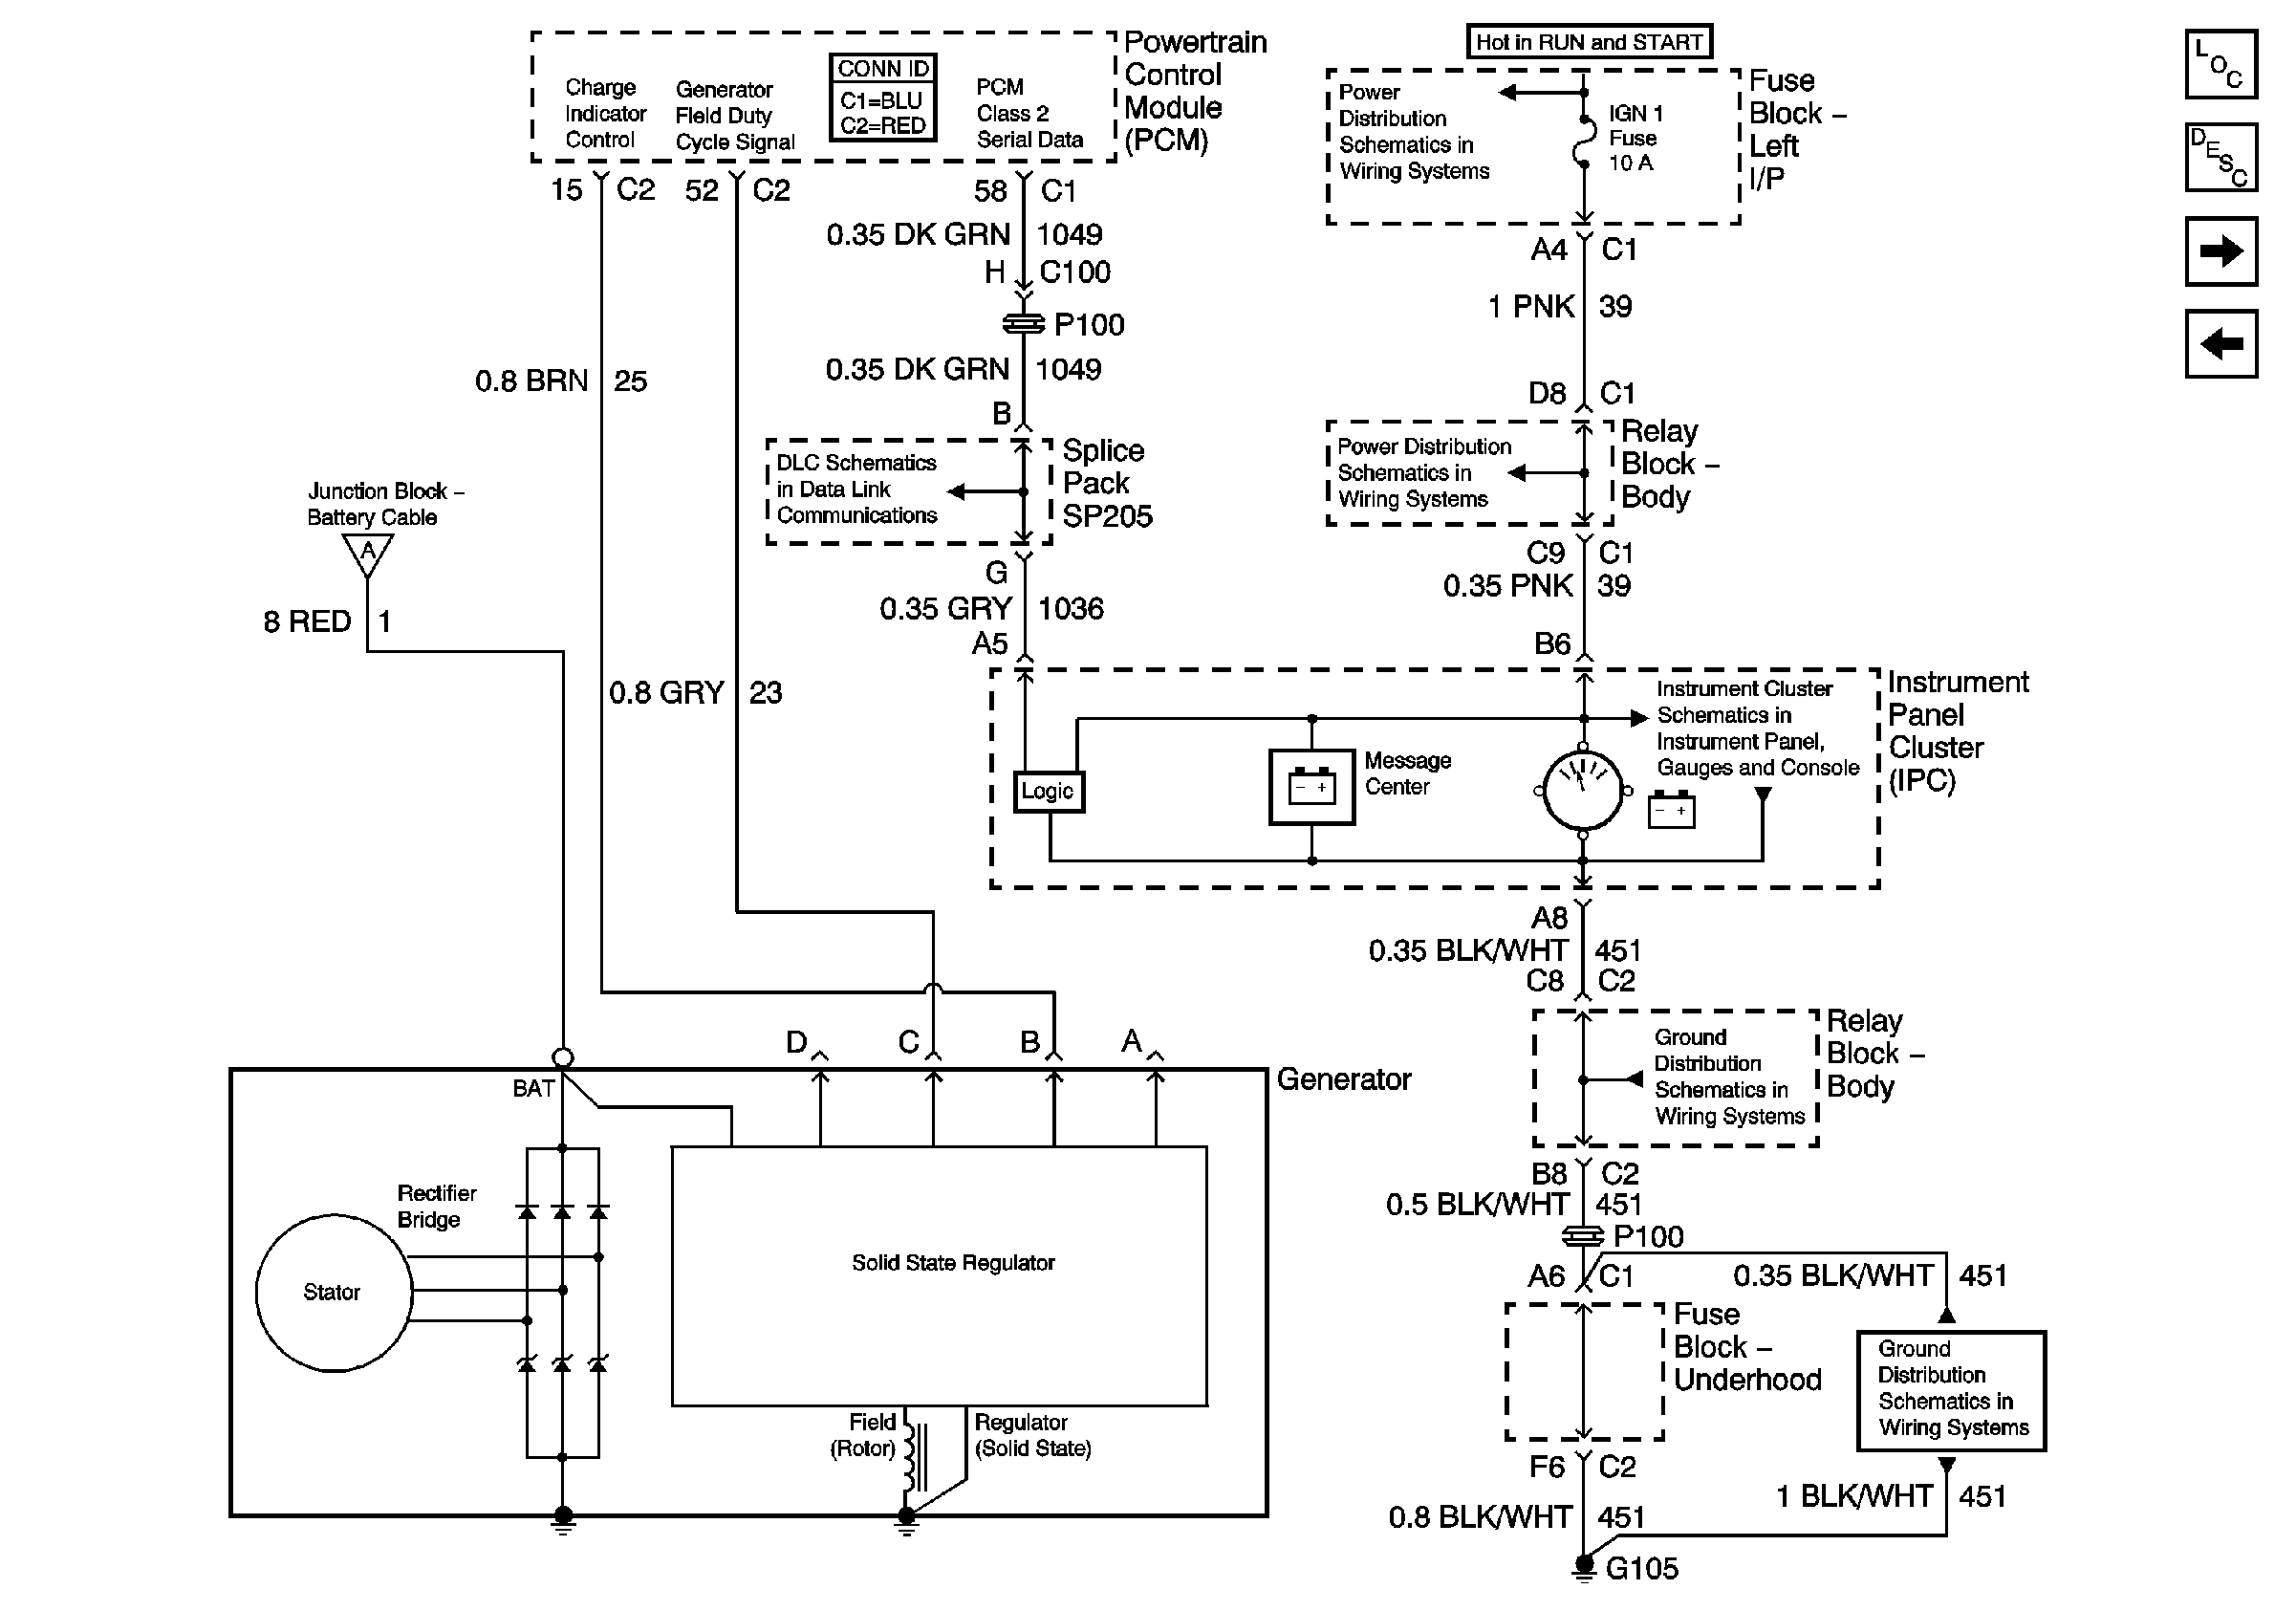 2002 Alternator Wiring Schematic